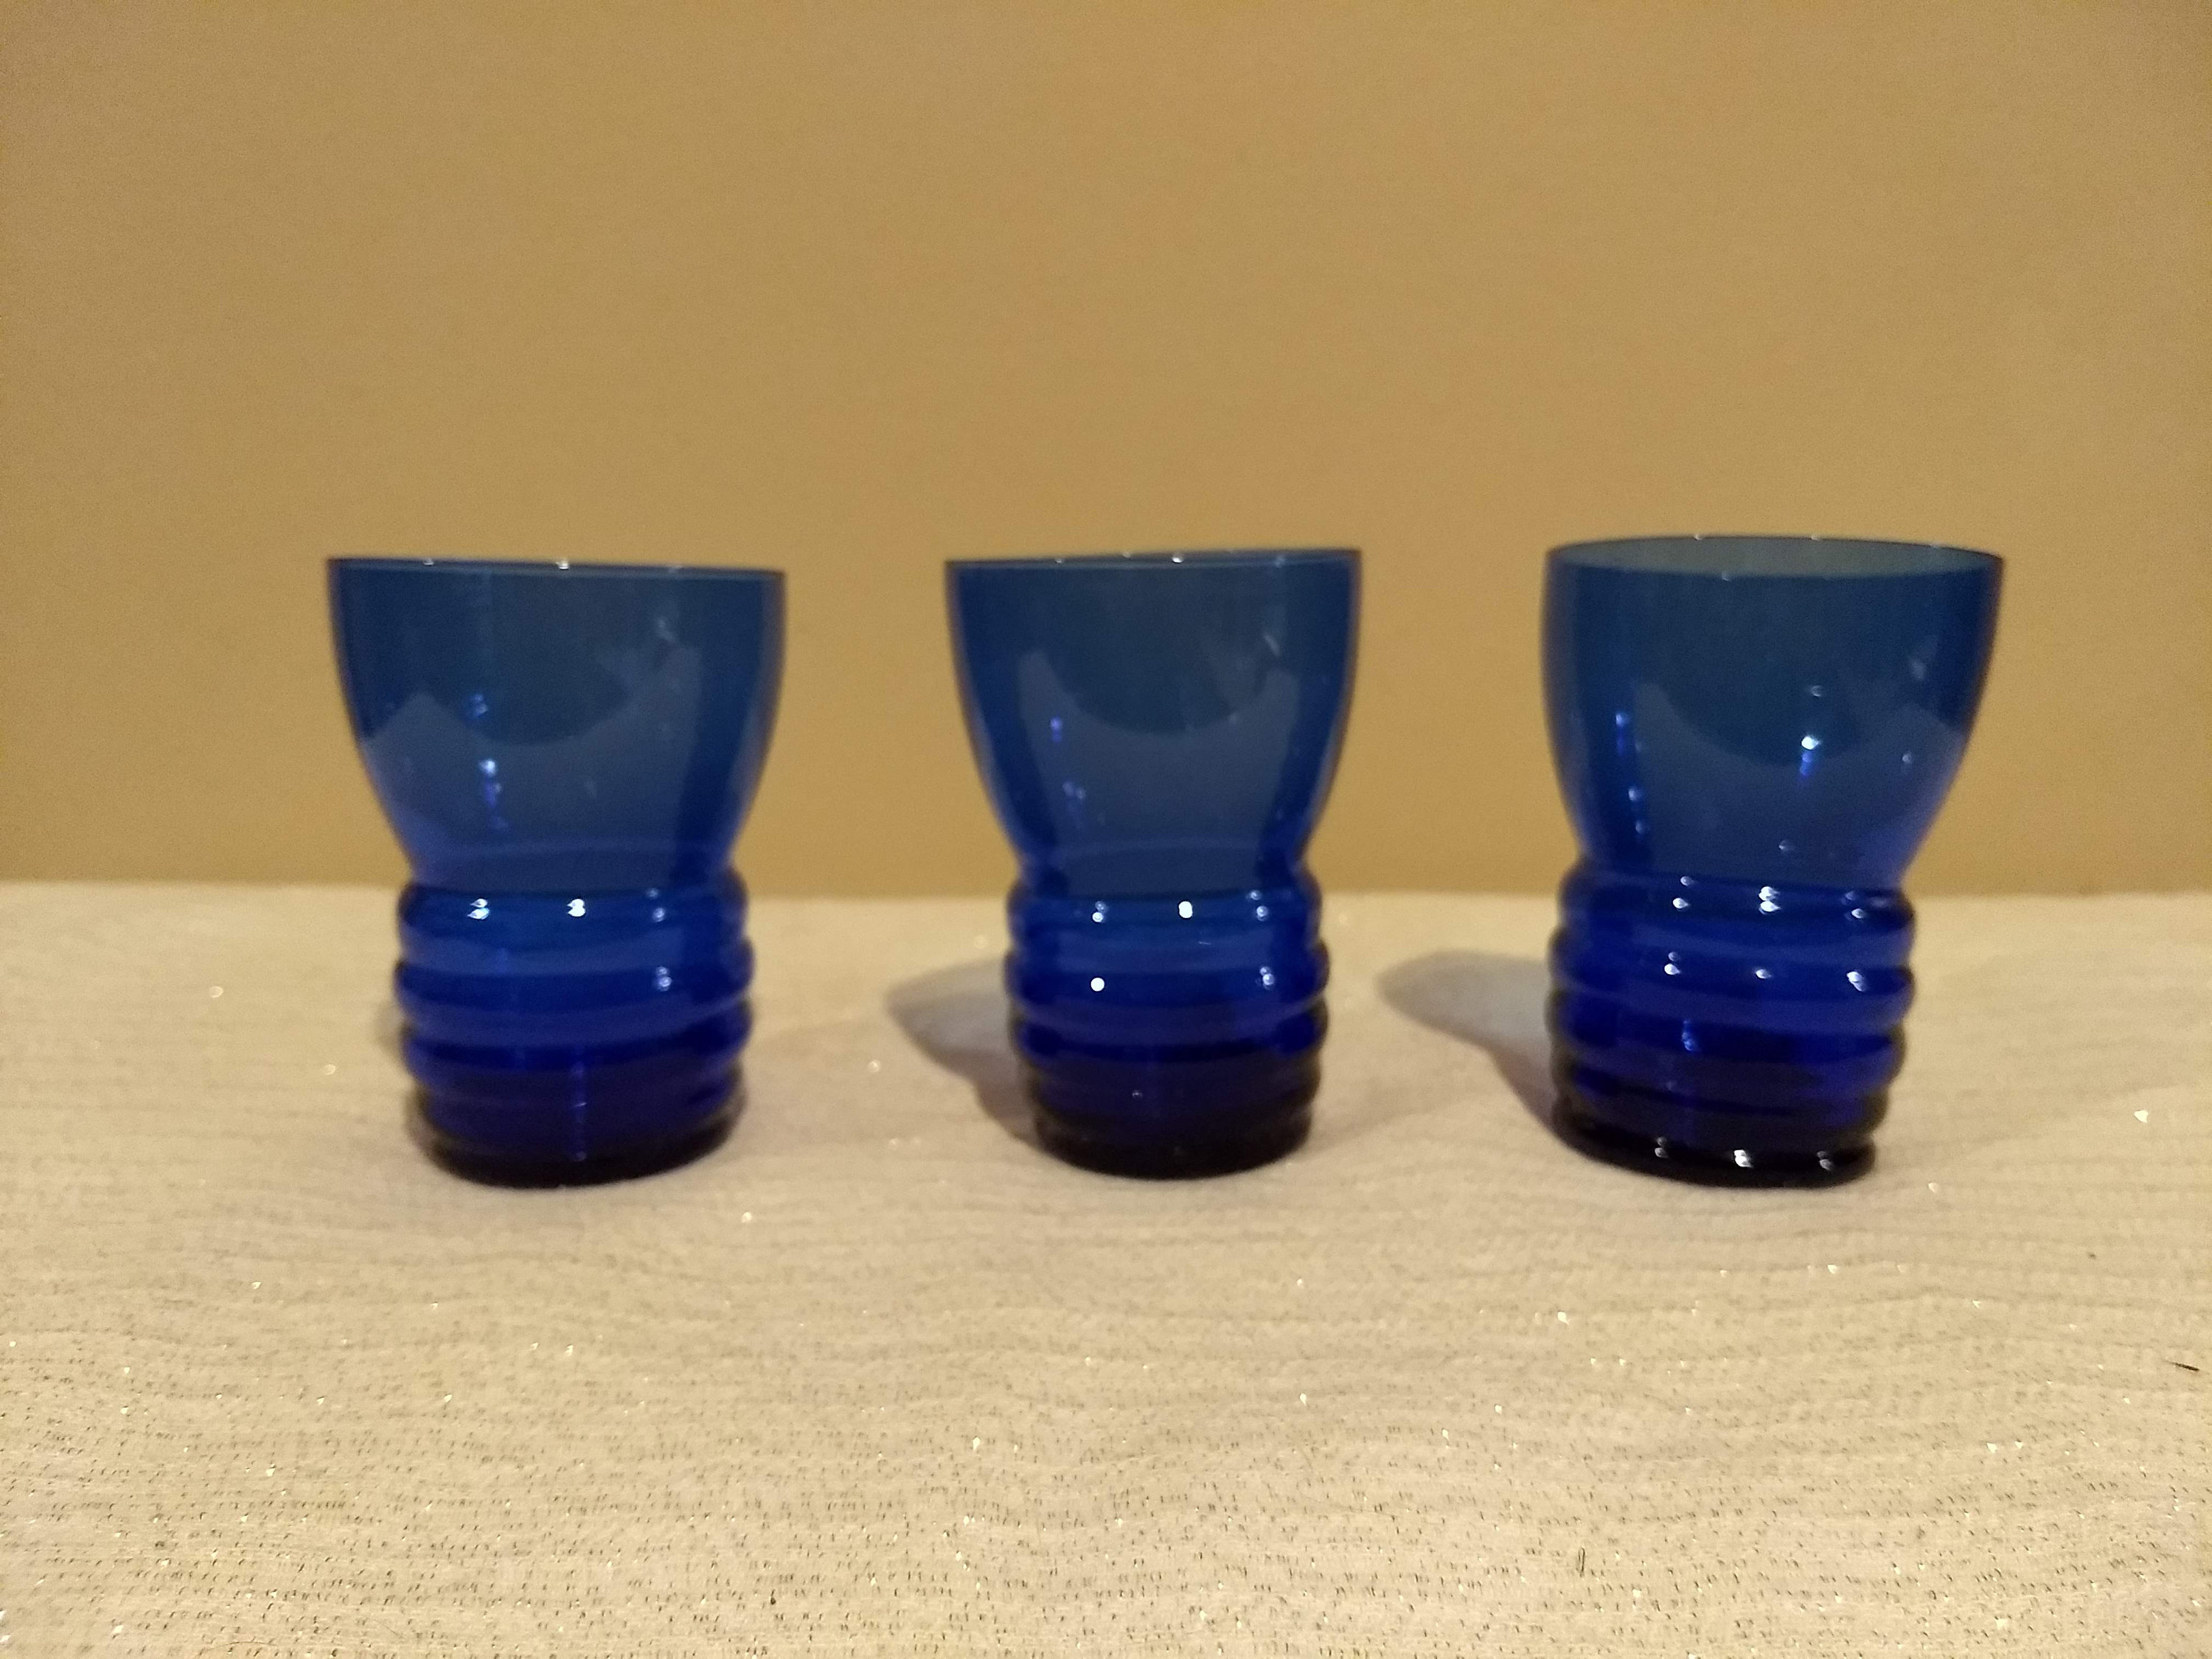 1930's Vintage prohibition era art deco style cobalt blue pitcher and 3 glasses